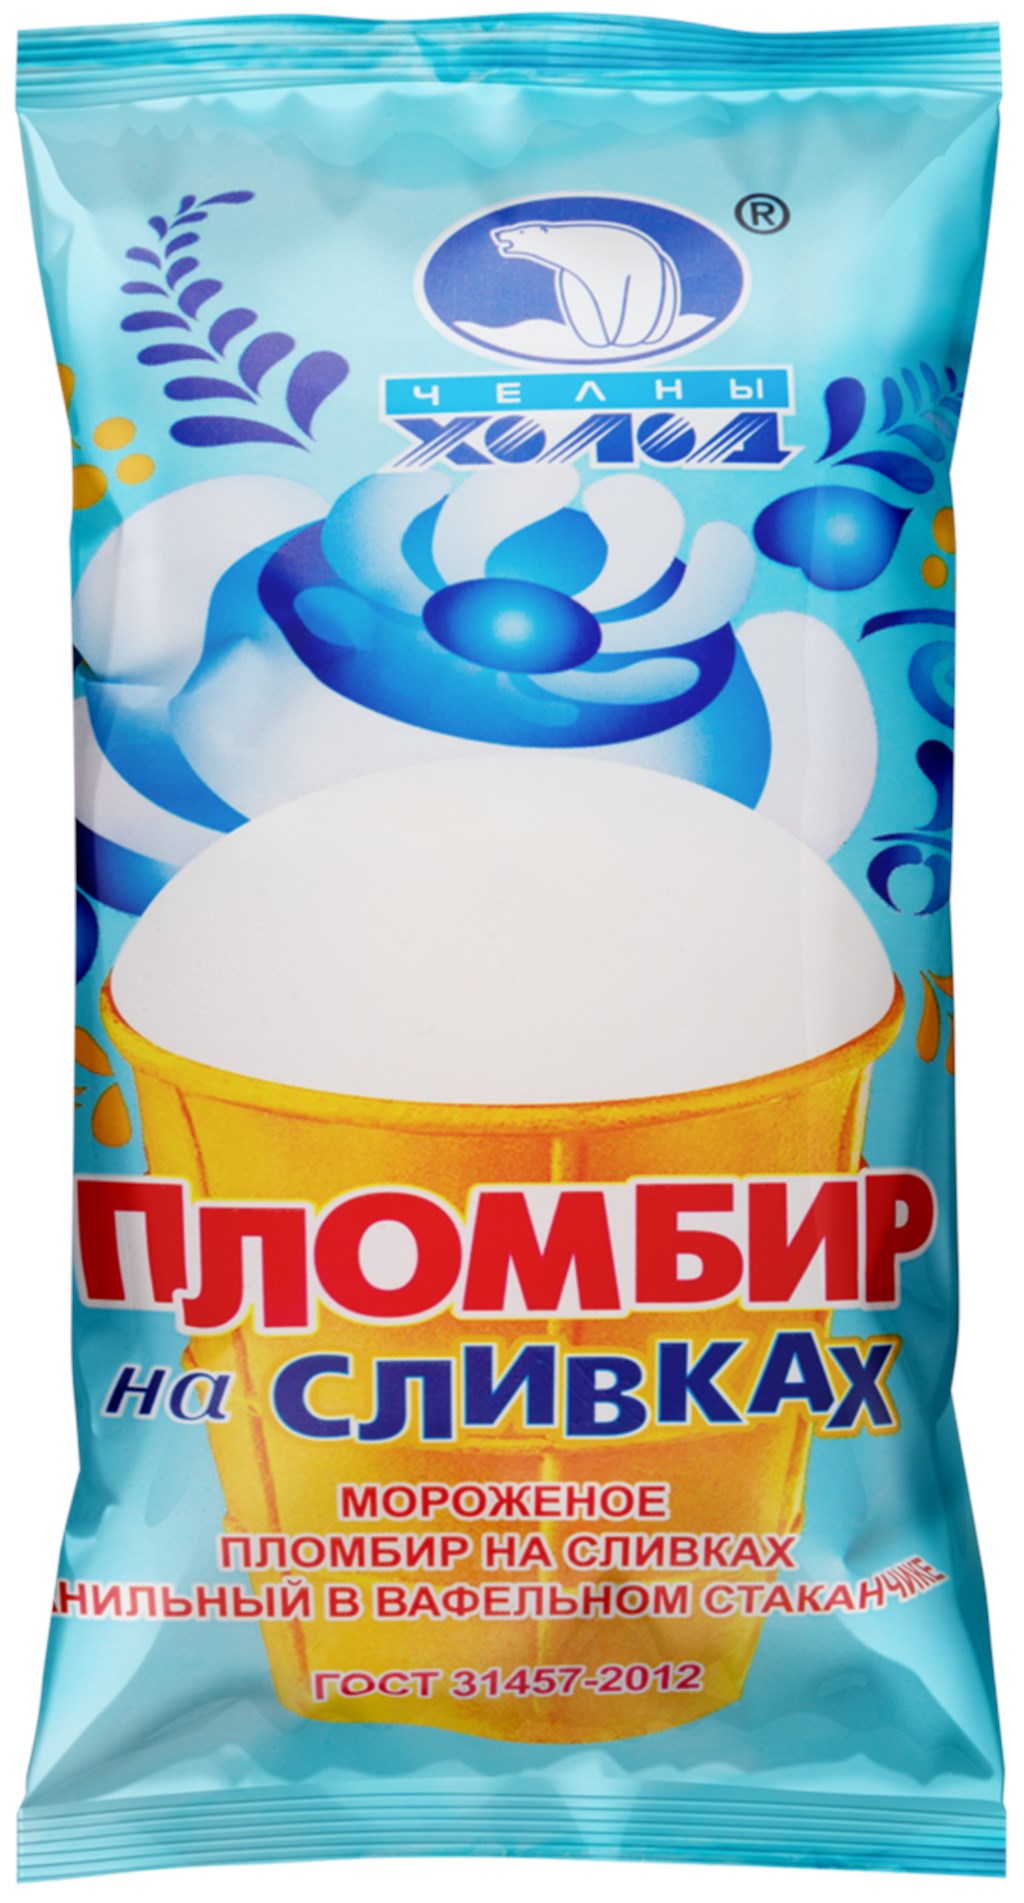 Мороженое Пломбир на сливках в вафельном стаканчике - Екатеринбург 